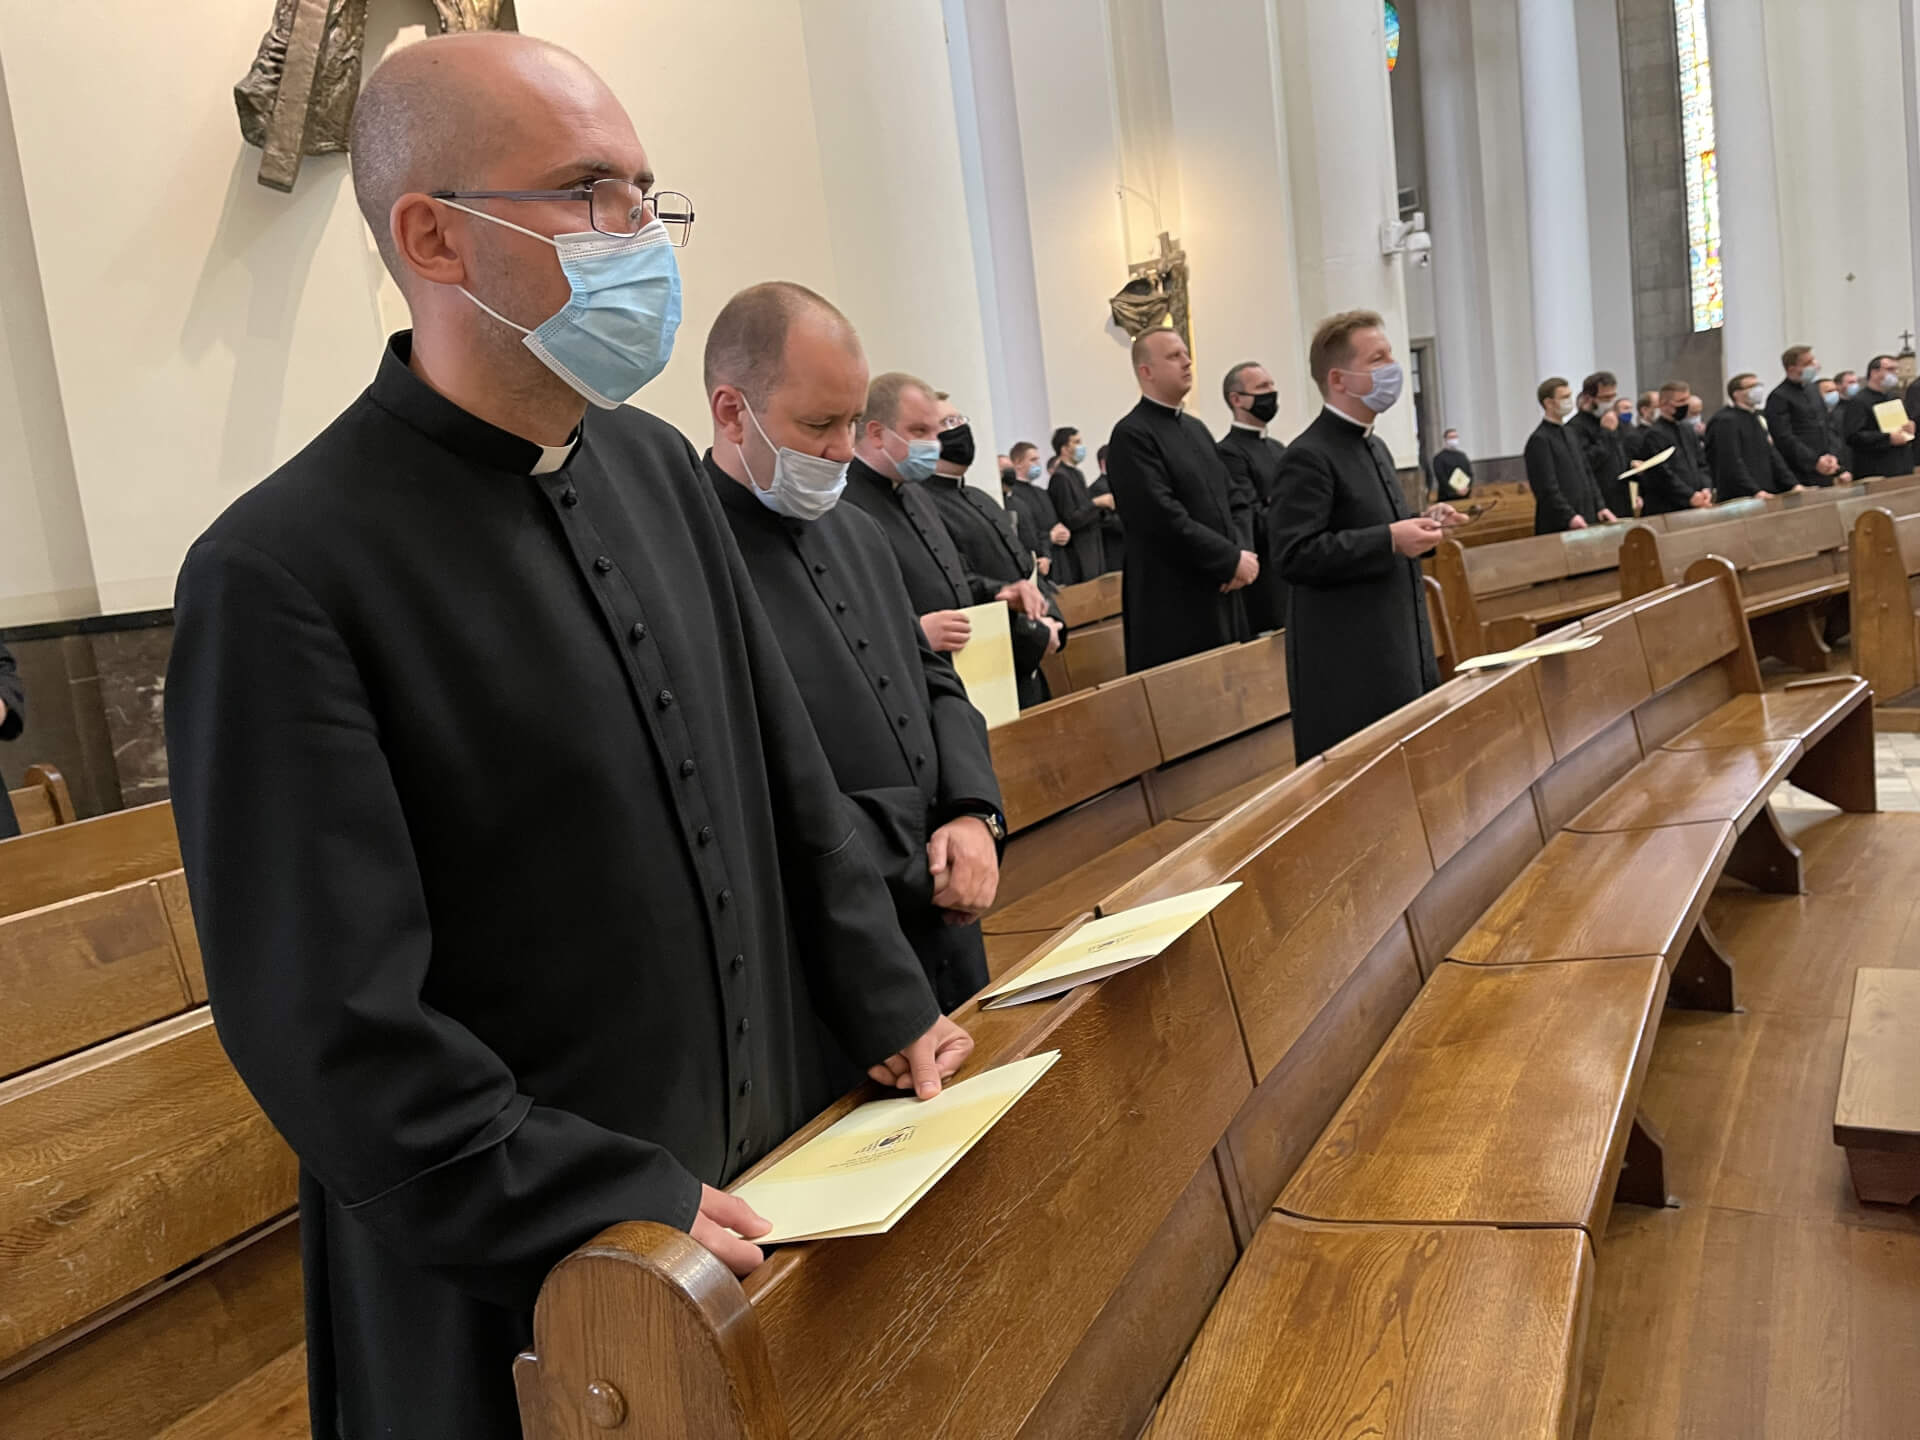 Zmiany personalne w Archidiecezji Katowickiej